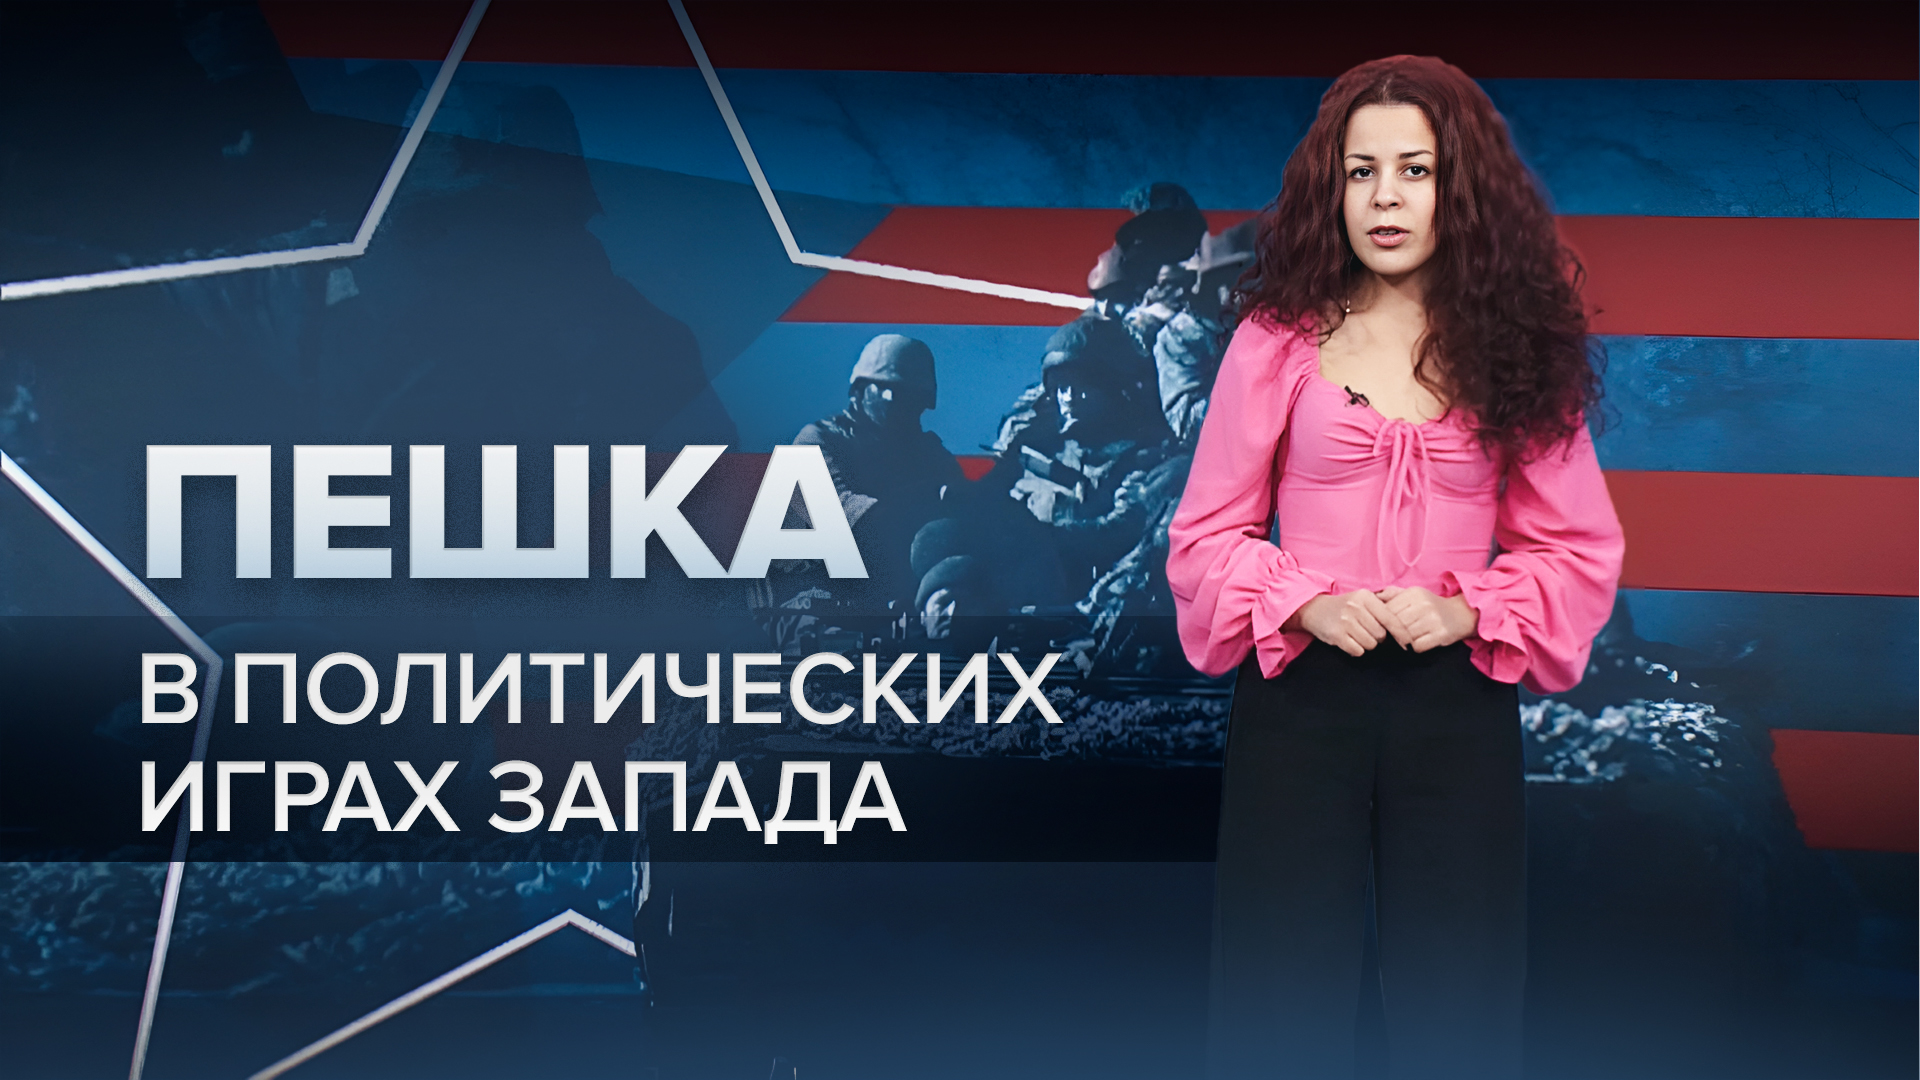 Никто не ожидает победы Украины: корреспондент RT — о настроении США и стран Запада